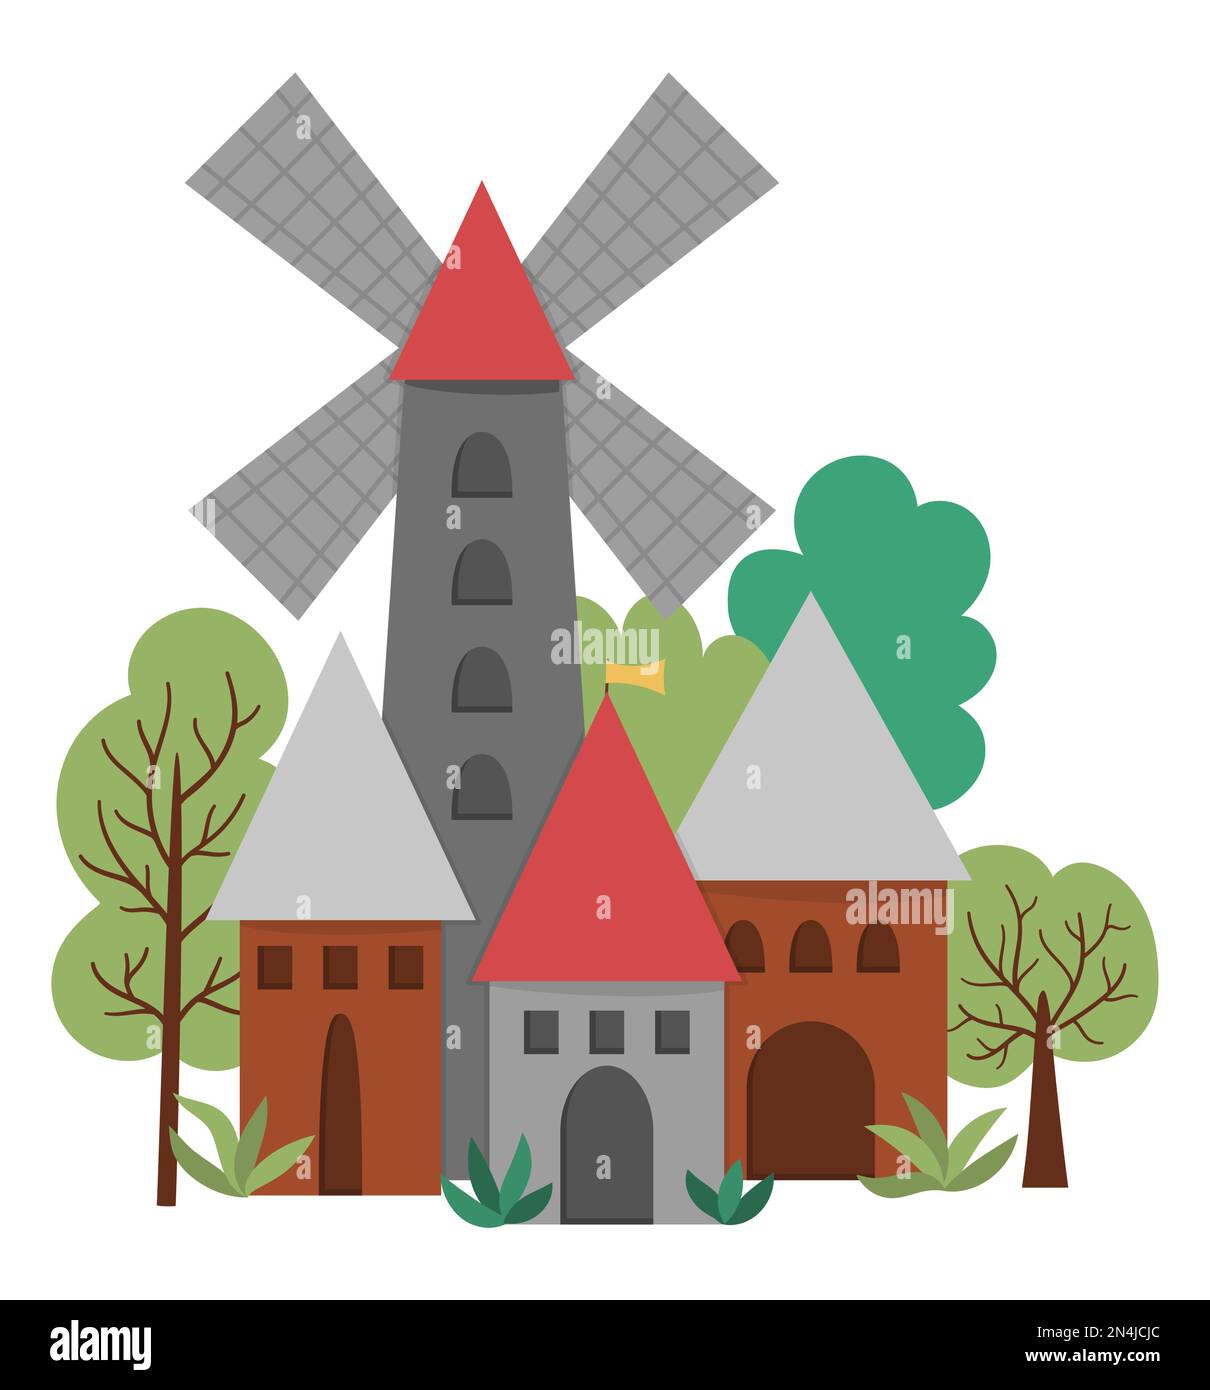 Icona di villaggio medievale Vector con mulino a vento isolato su sfondo bianco. Immagine del regno Magico. Edificio in pietra e legno. Campagna con torri, ho Illustrazione Vettoriale